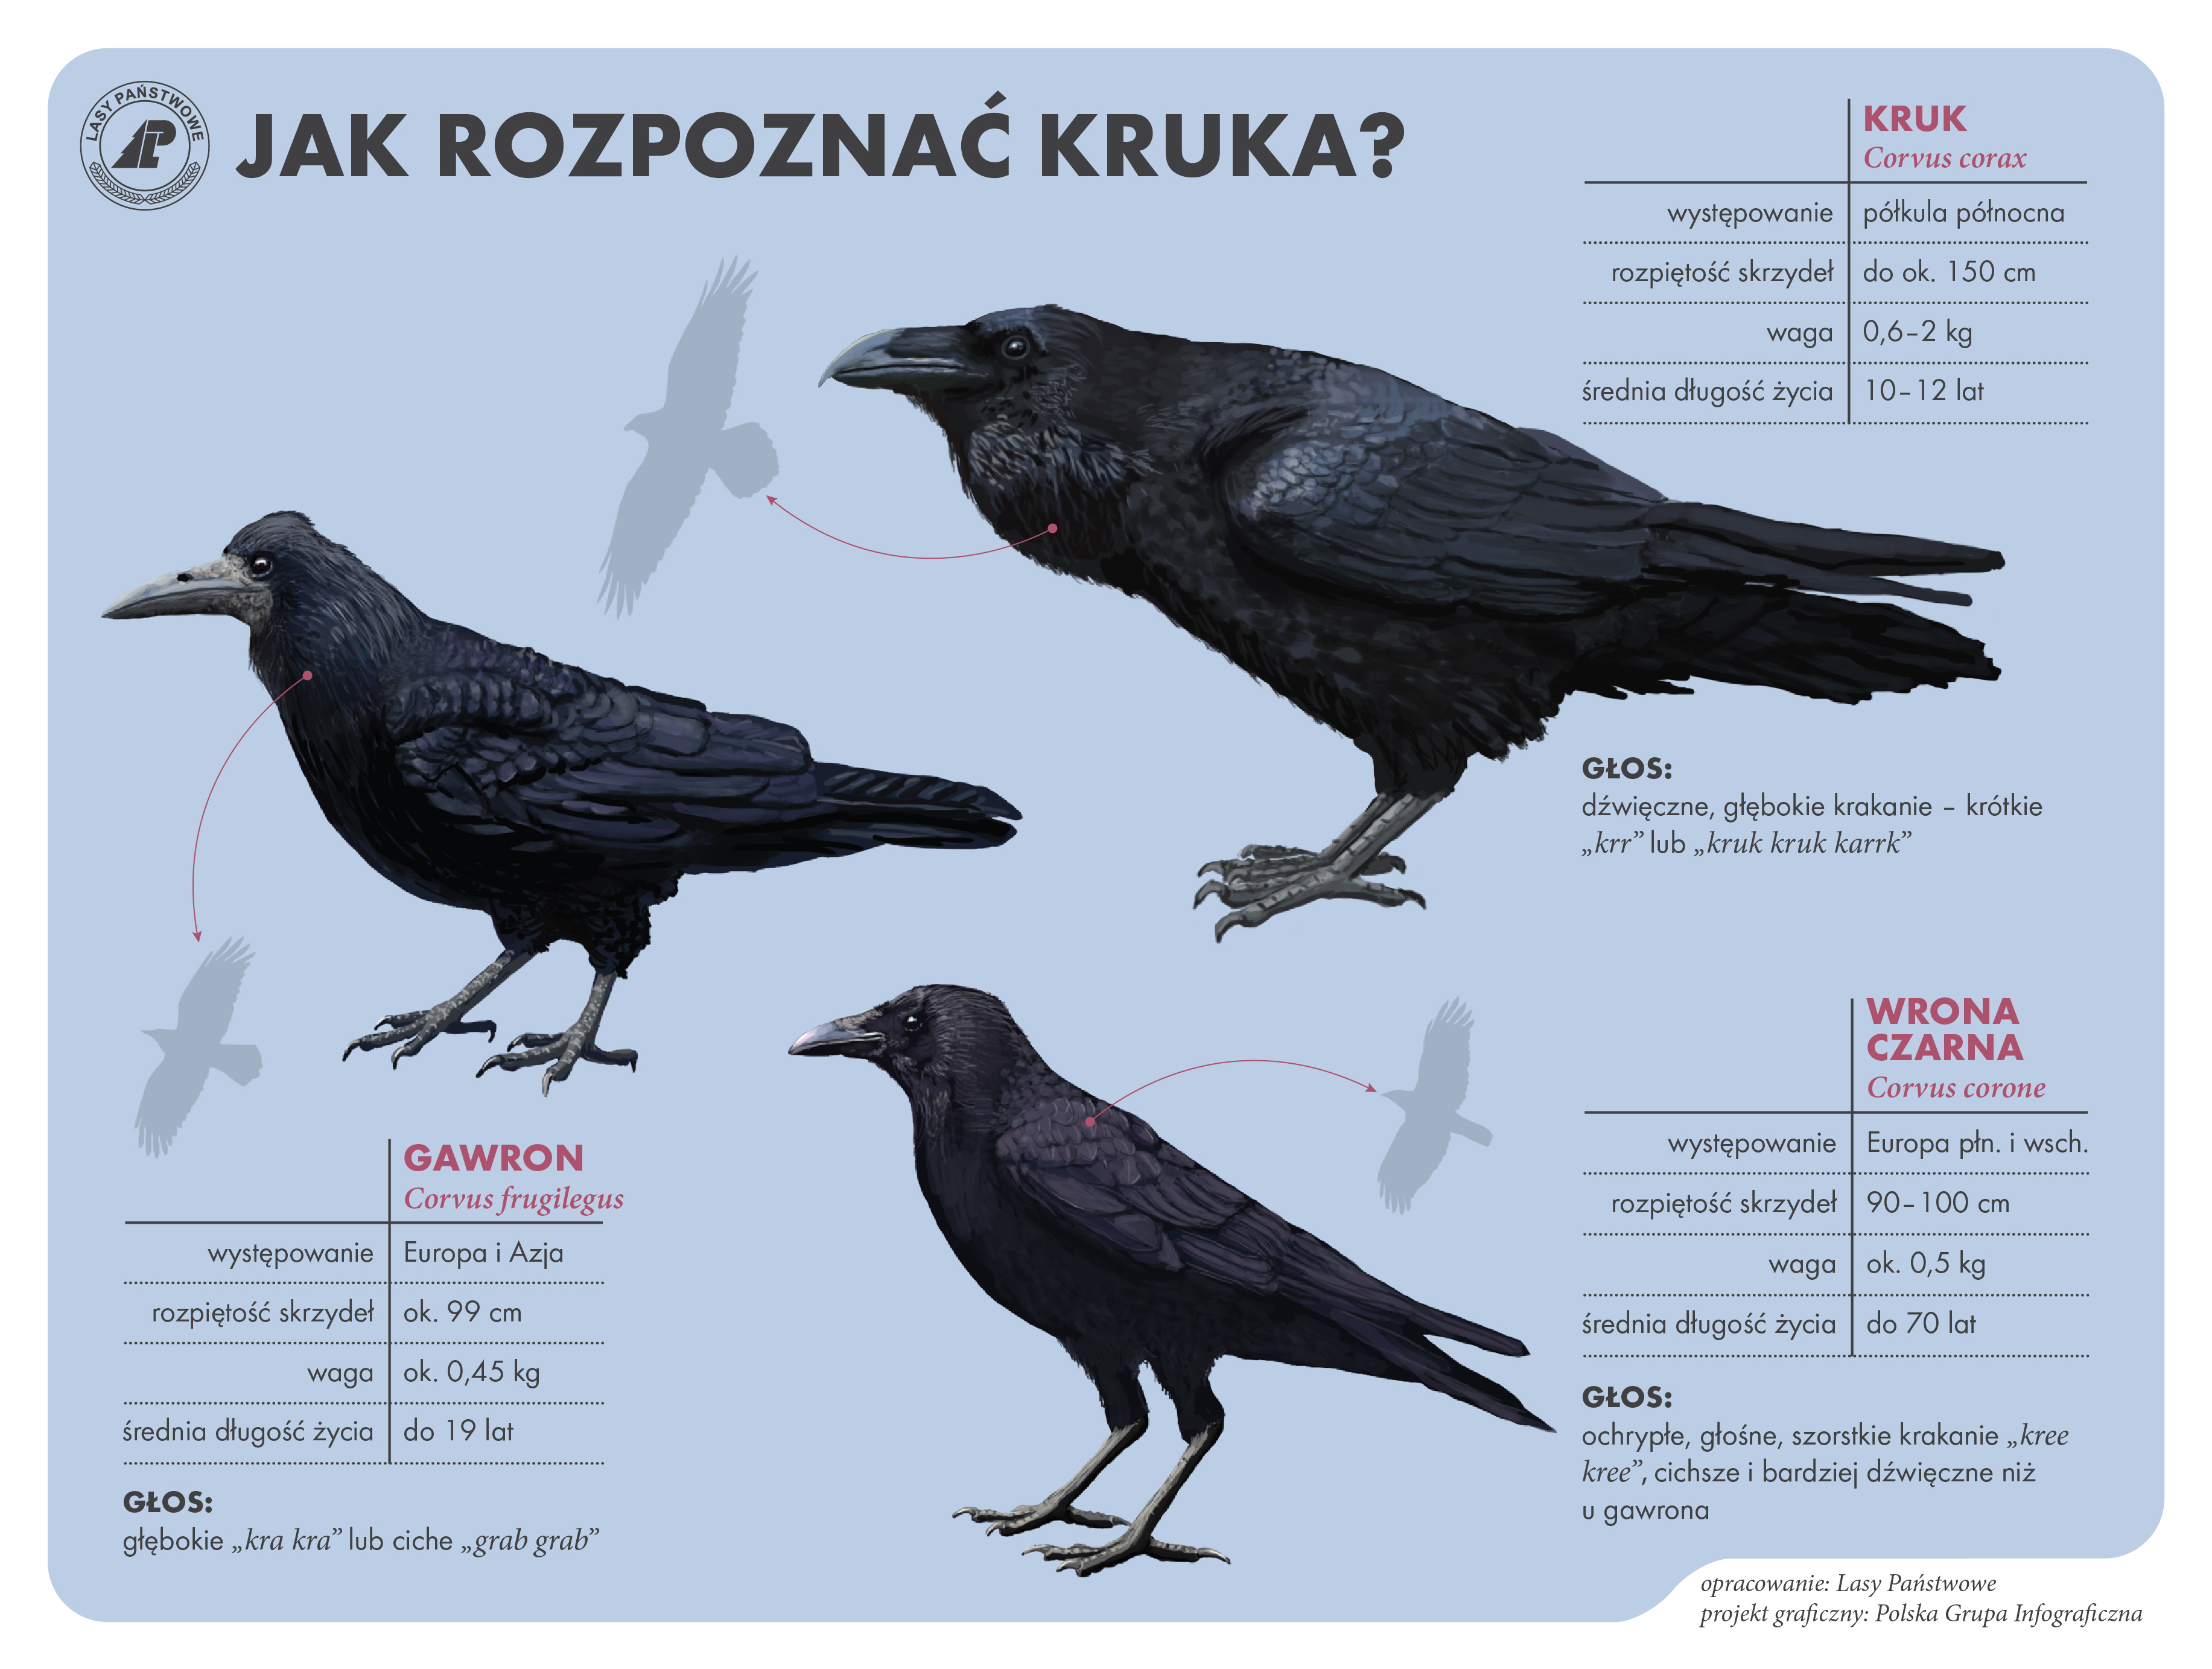 Jak kracze wrona a jak kruk? Foto: wloszakowice.poznan.lasy.gov.pl